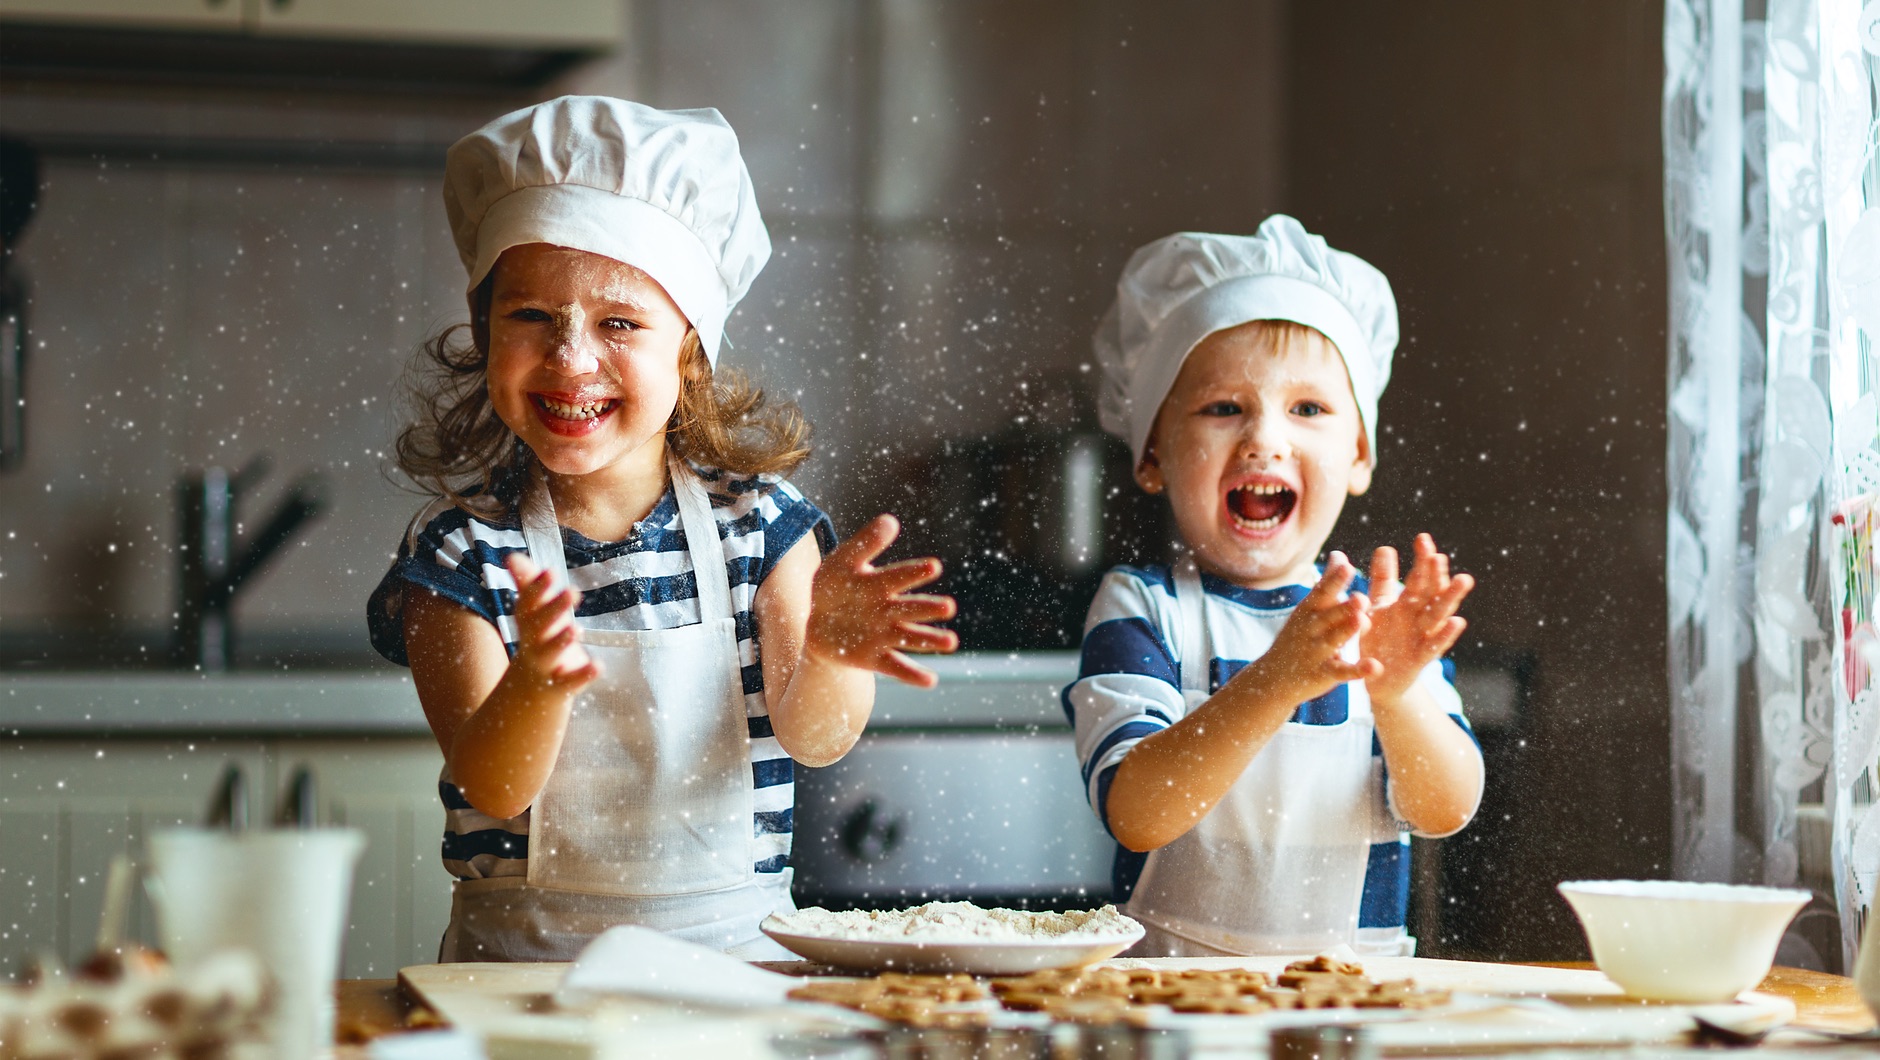 Правила за безопасност в кухнята за деца